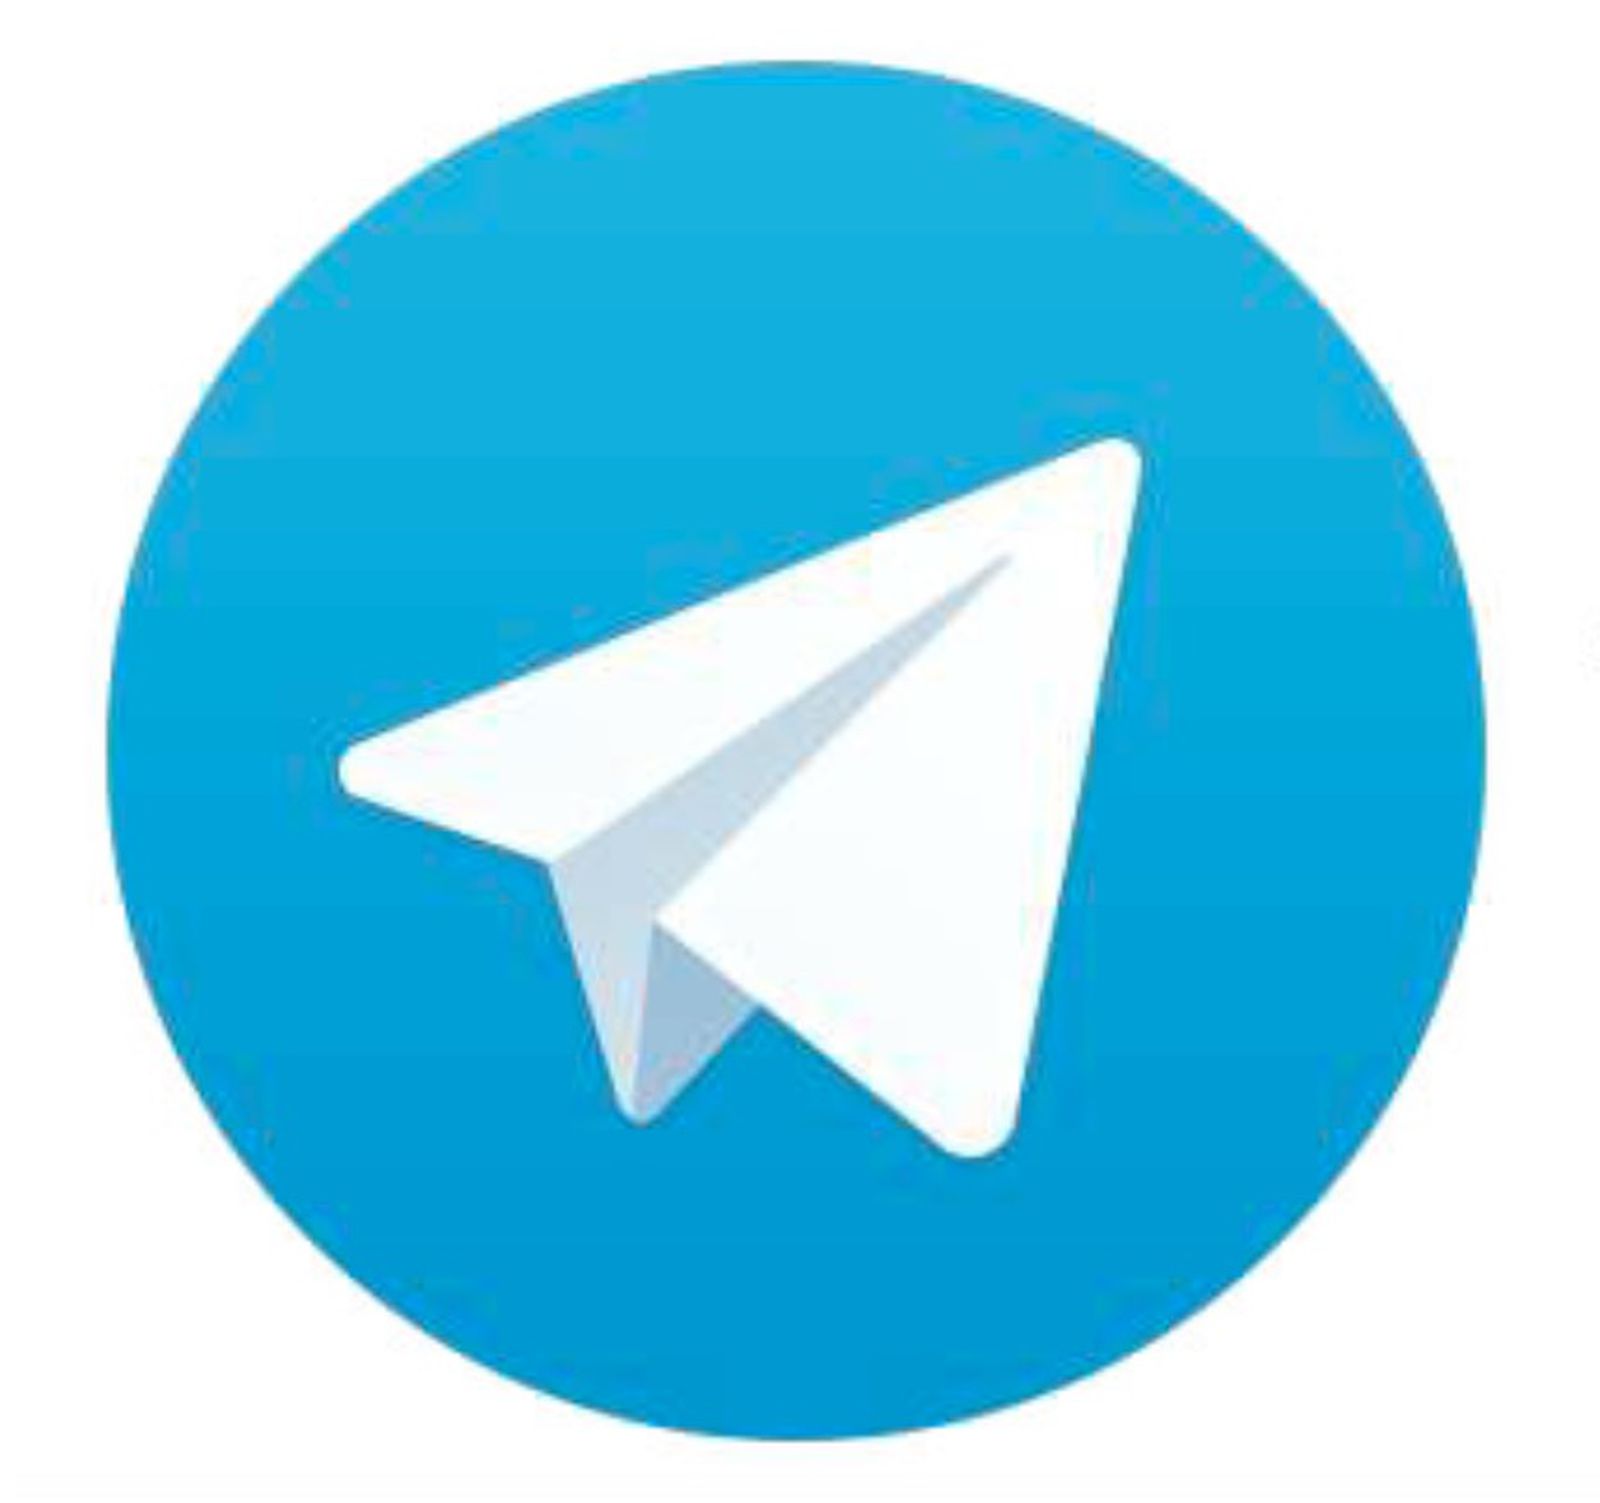 telegram for macbook air